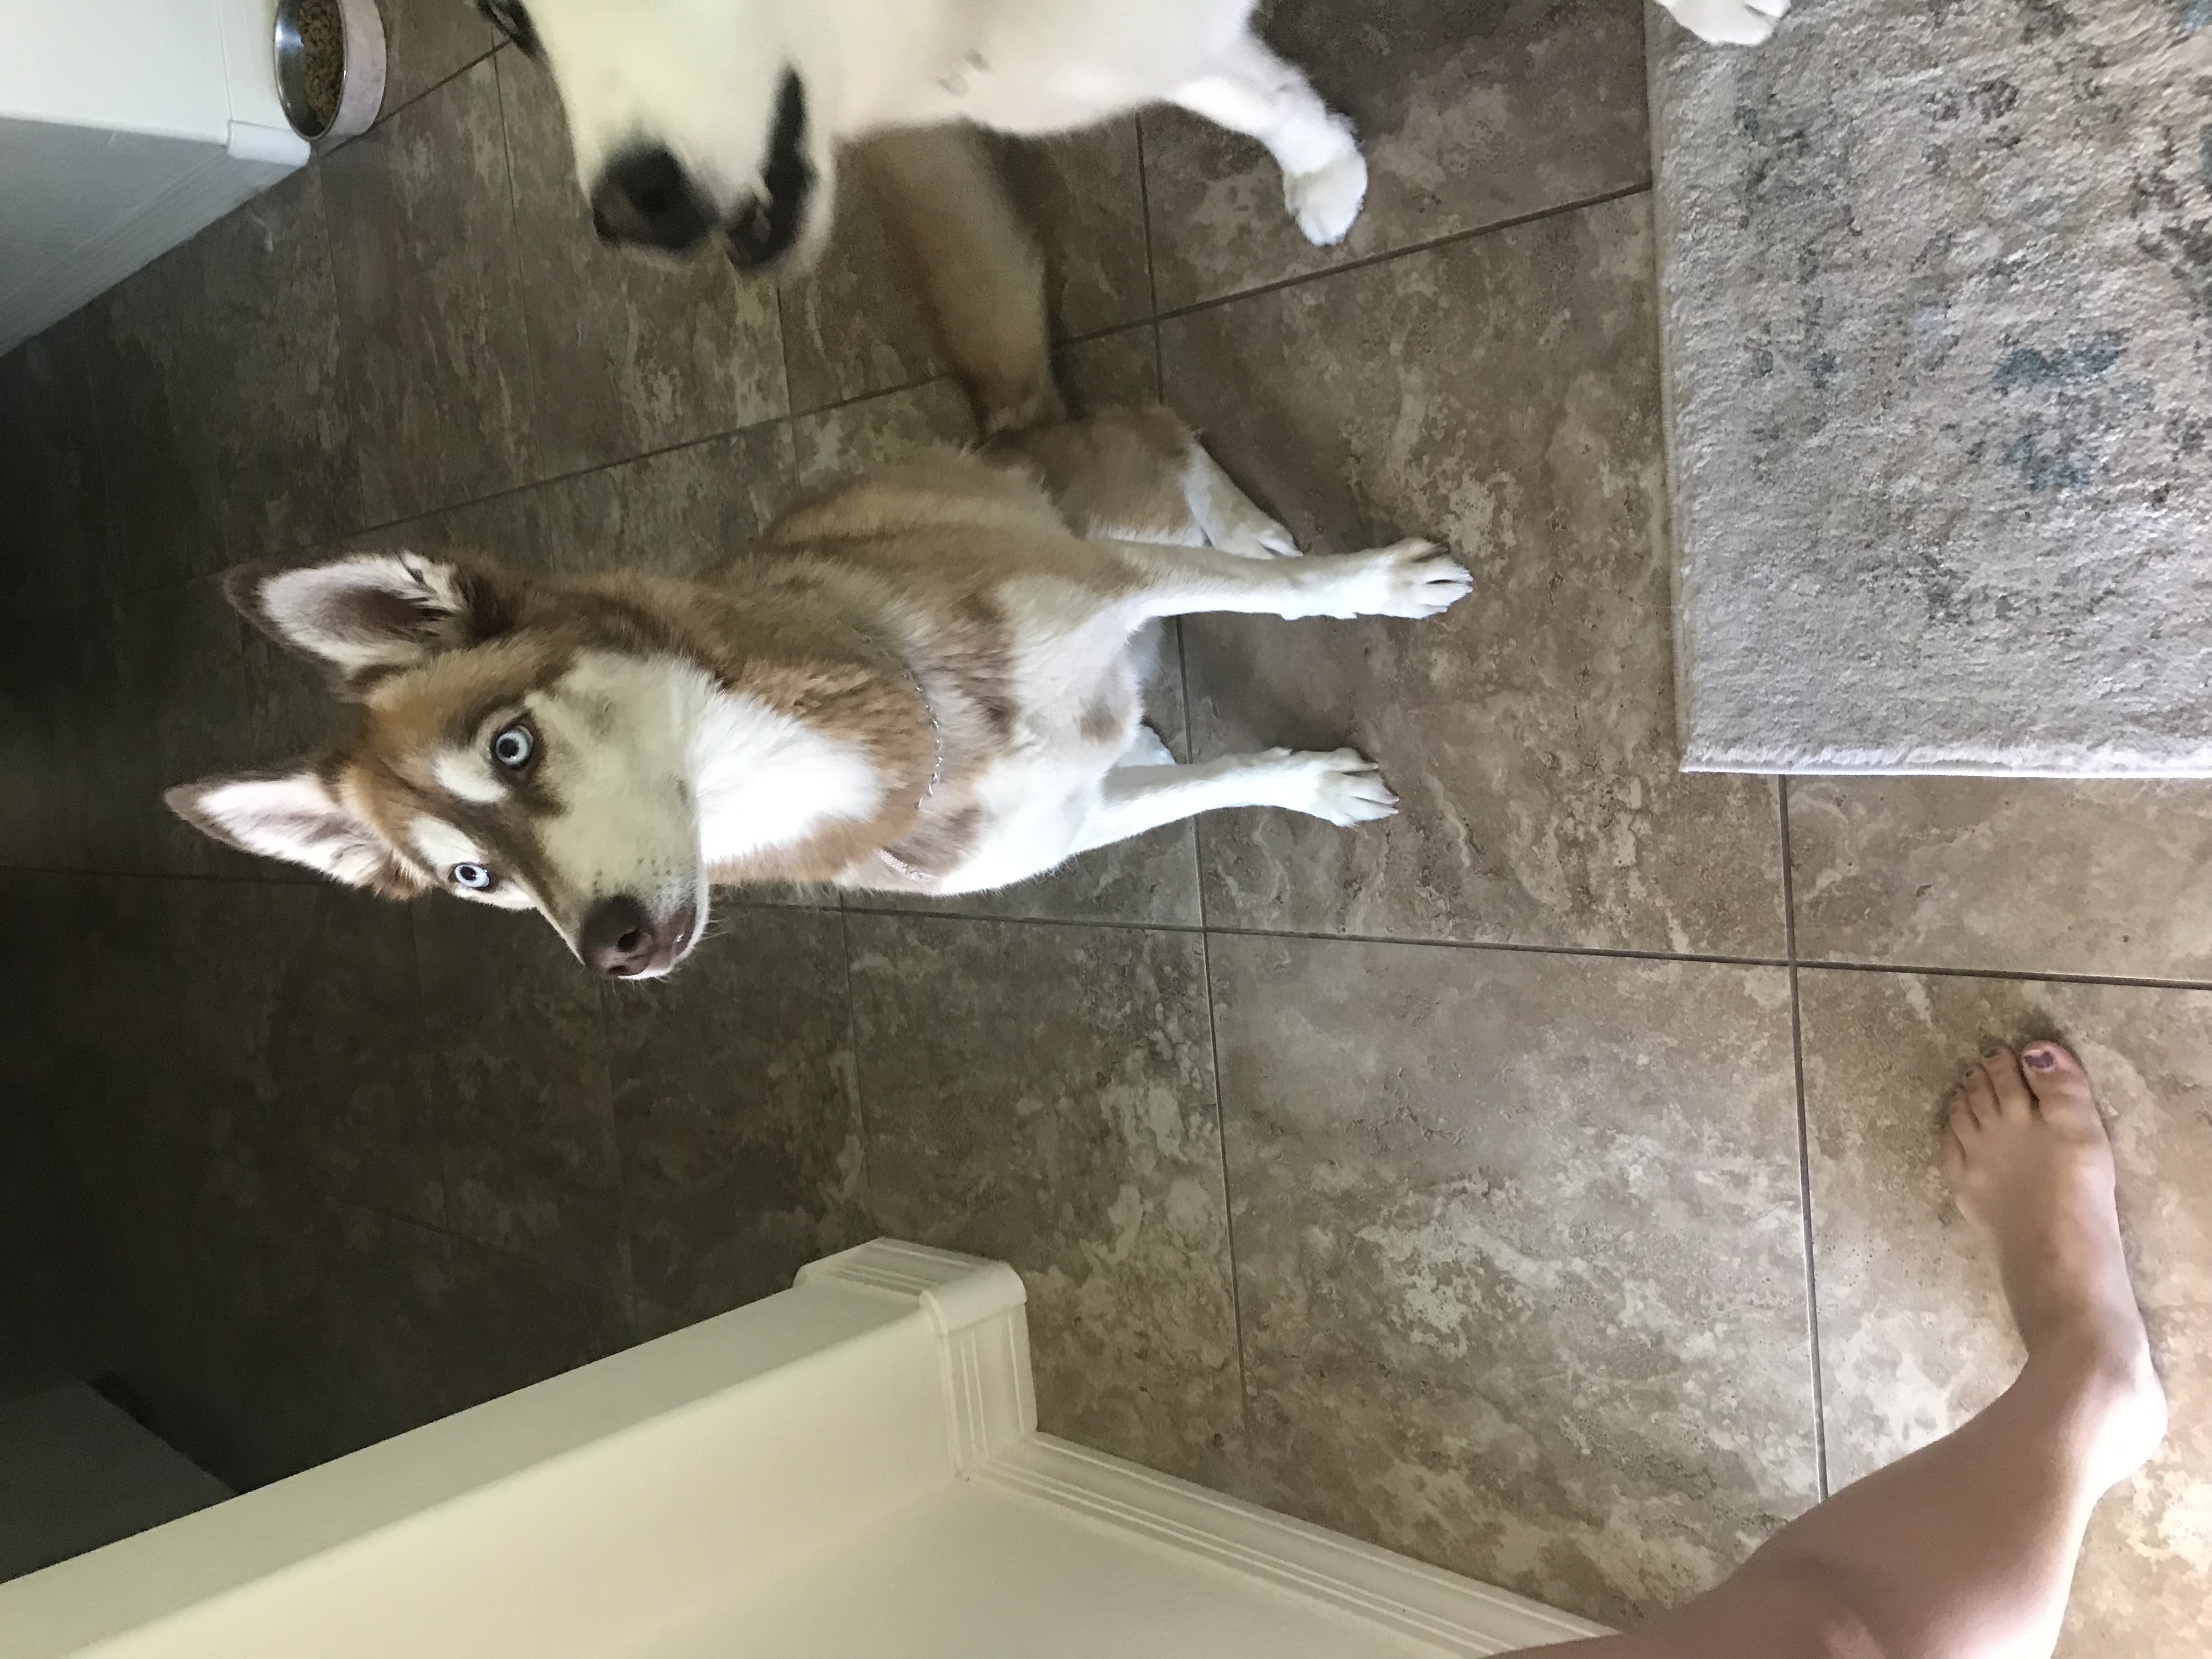 adoptable Dog in Peoria,AZ named Kita